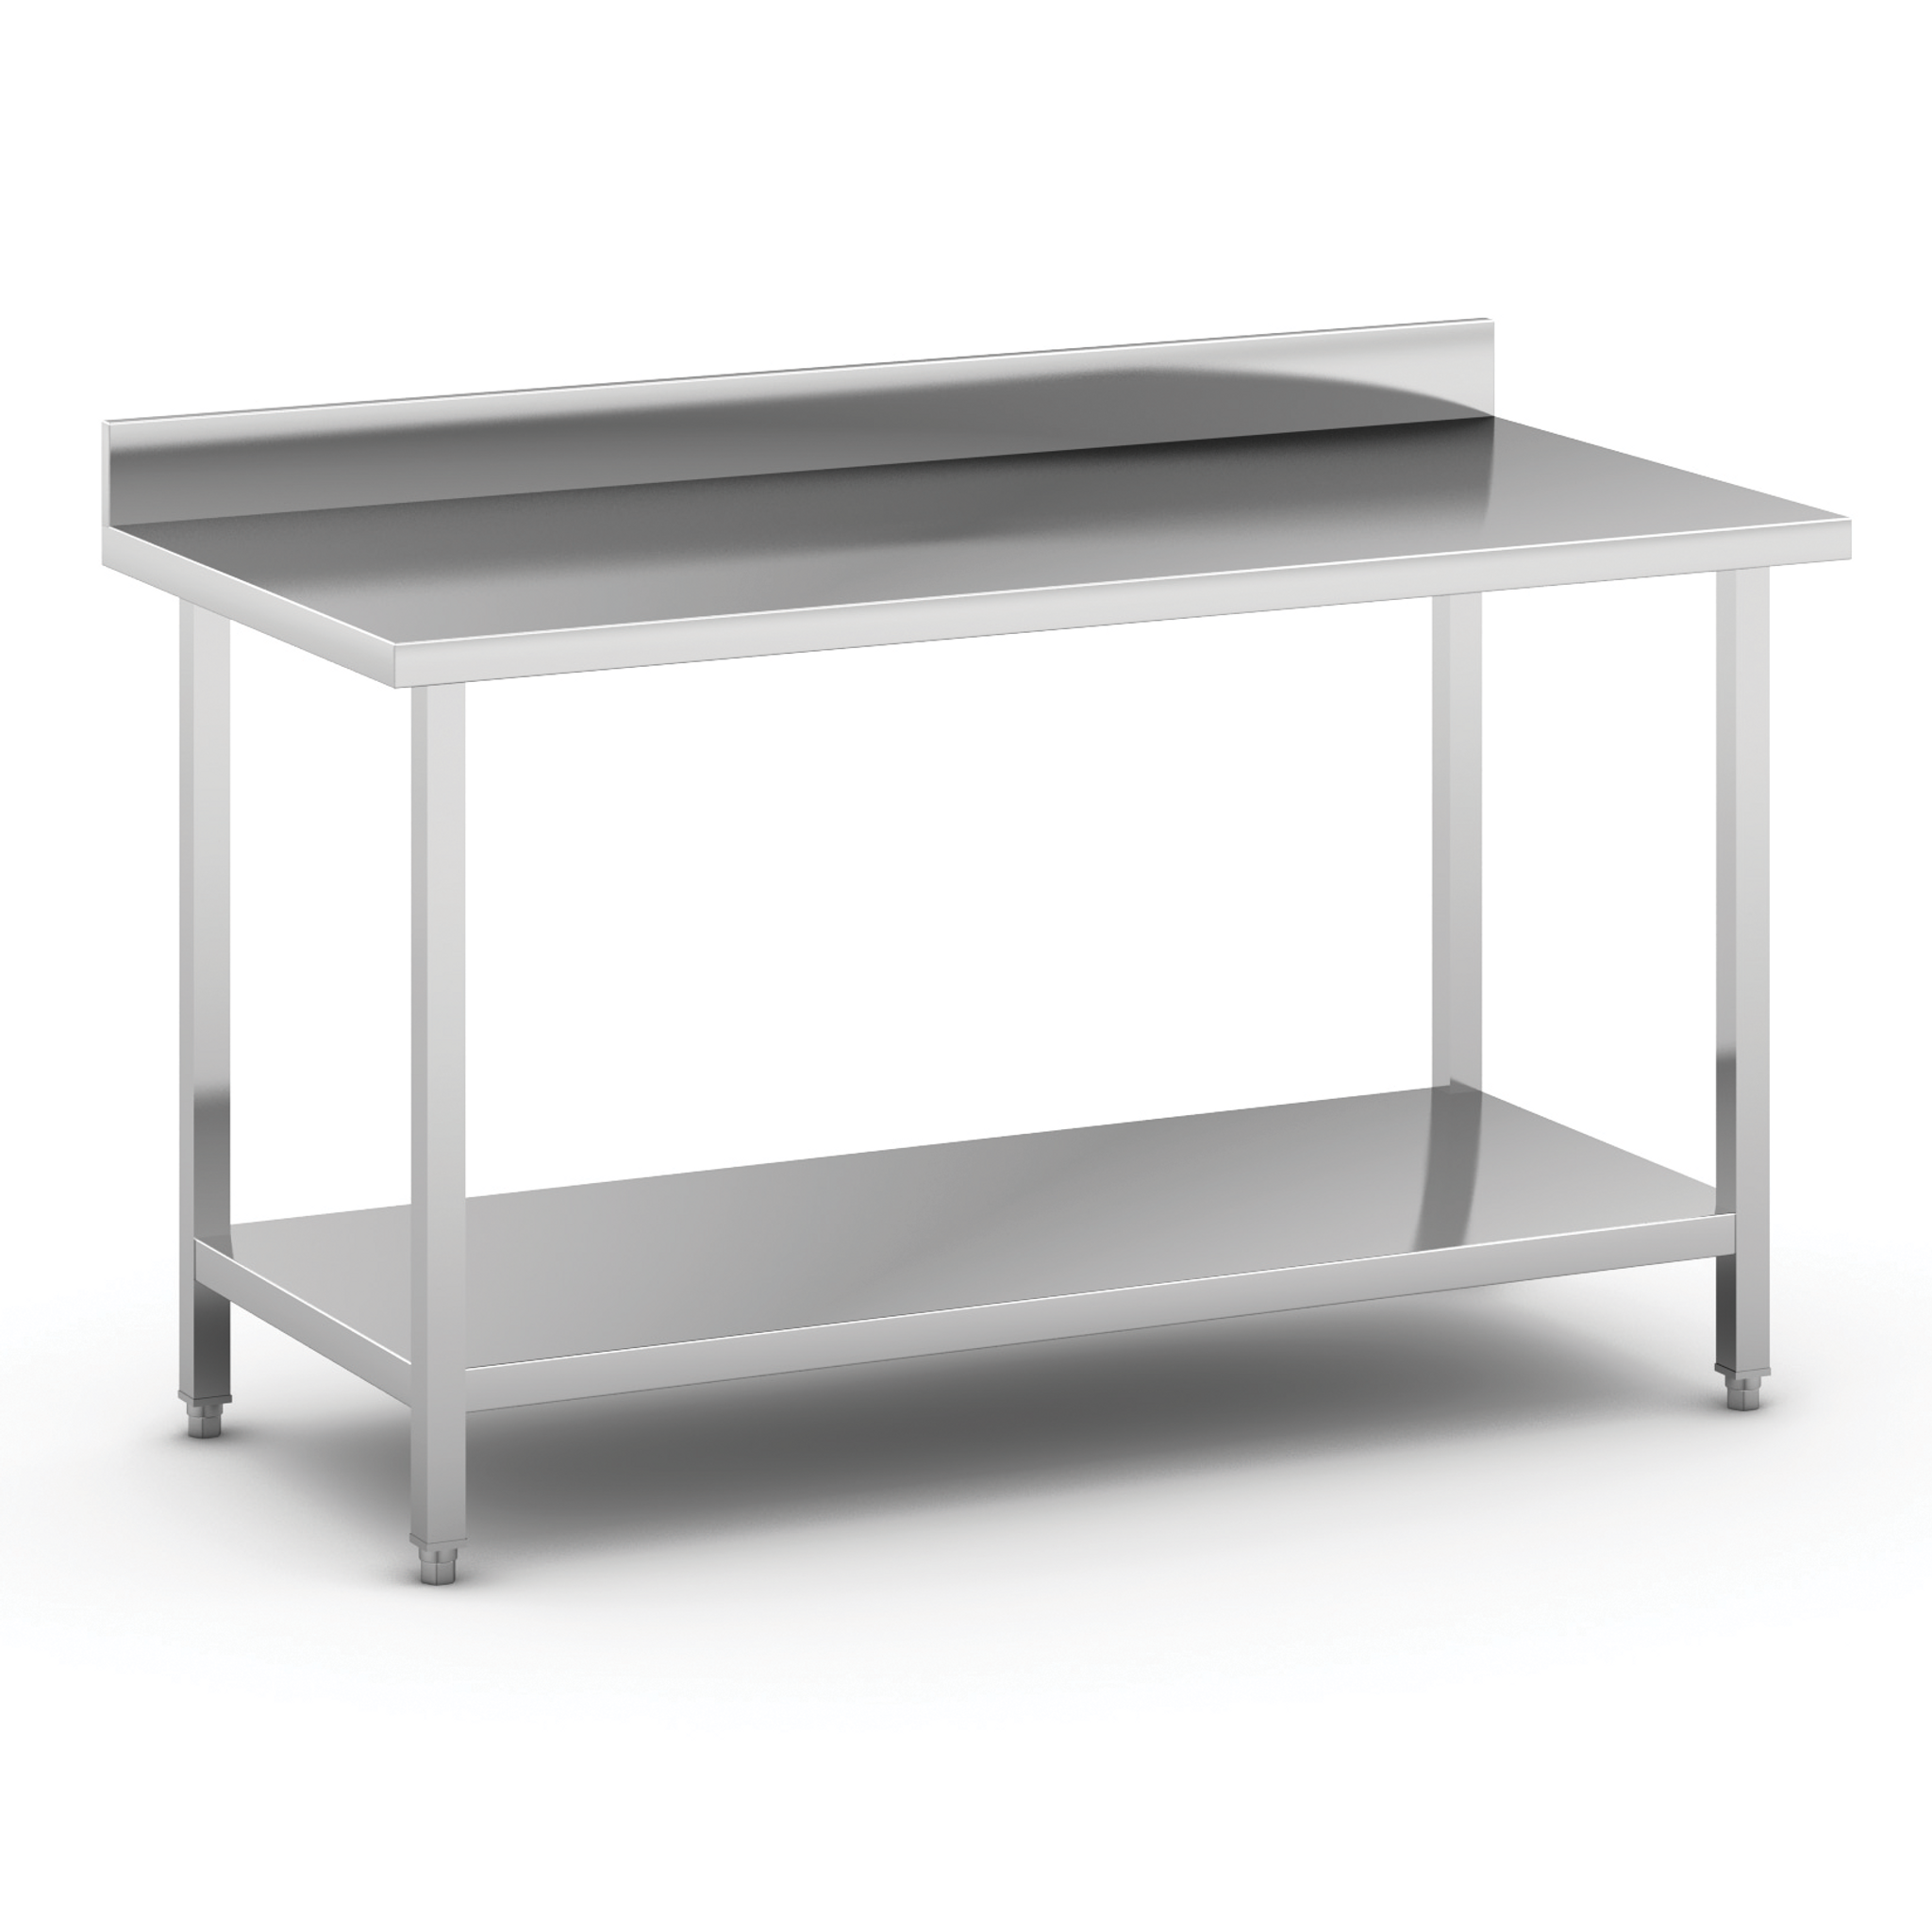 Nerezový pracovný stôl s policou a ohrádkou, 1500 x 700 x 850 mm